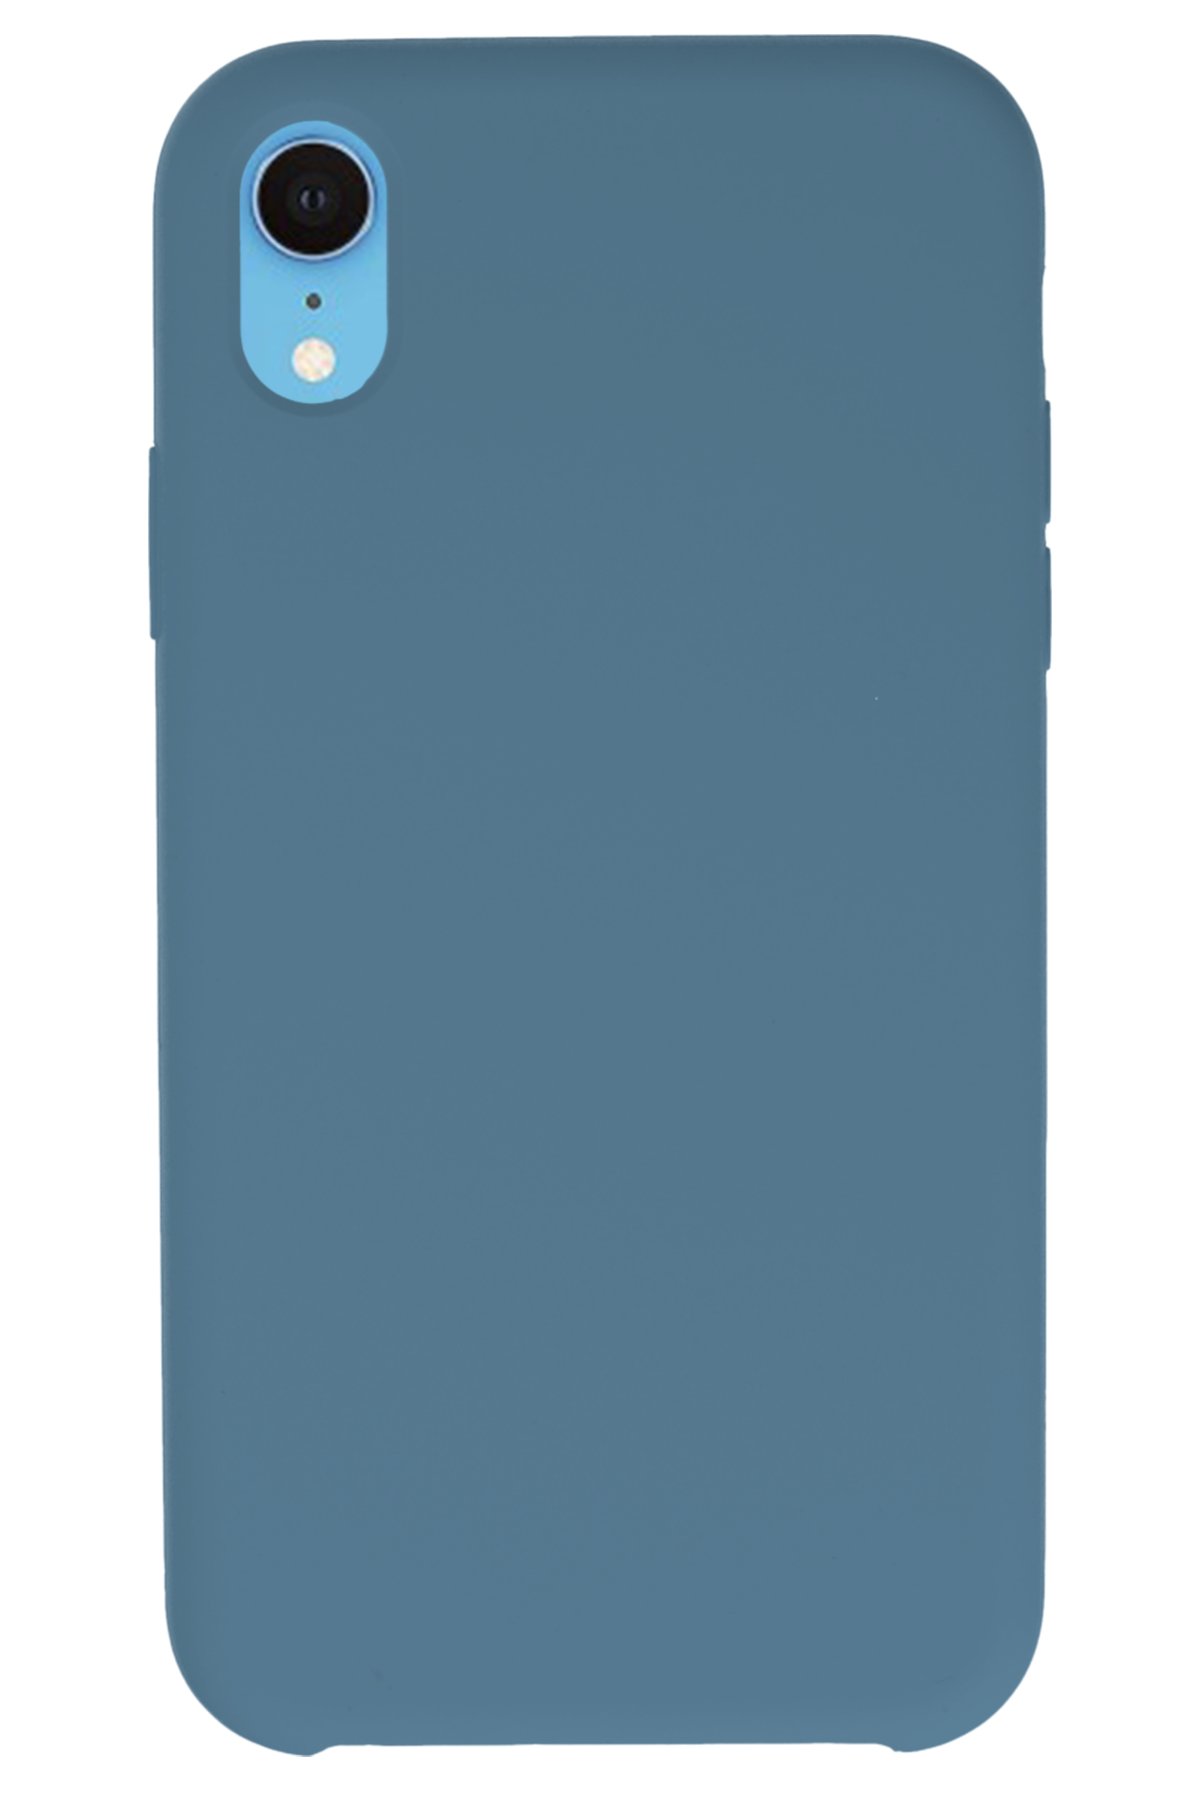 NewFace Newface iPhone XR Kılıf Lansman Legant Silikon - Açık Mavi